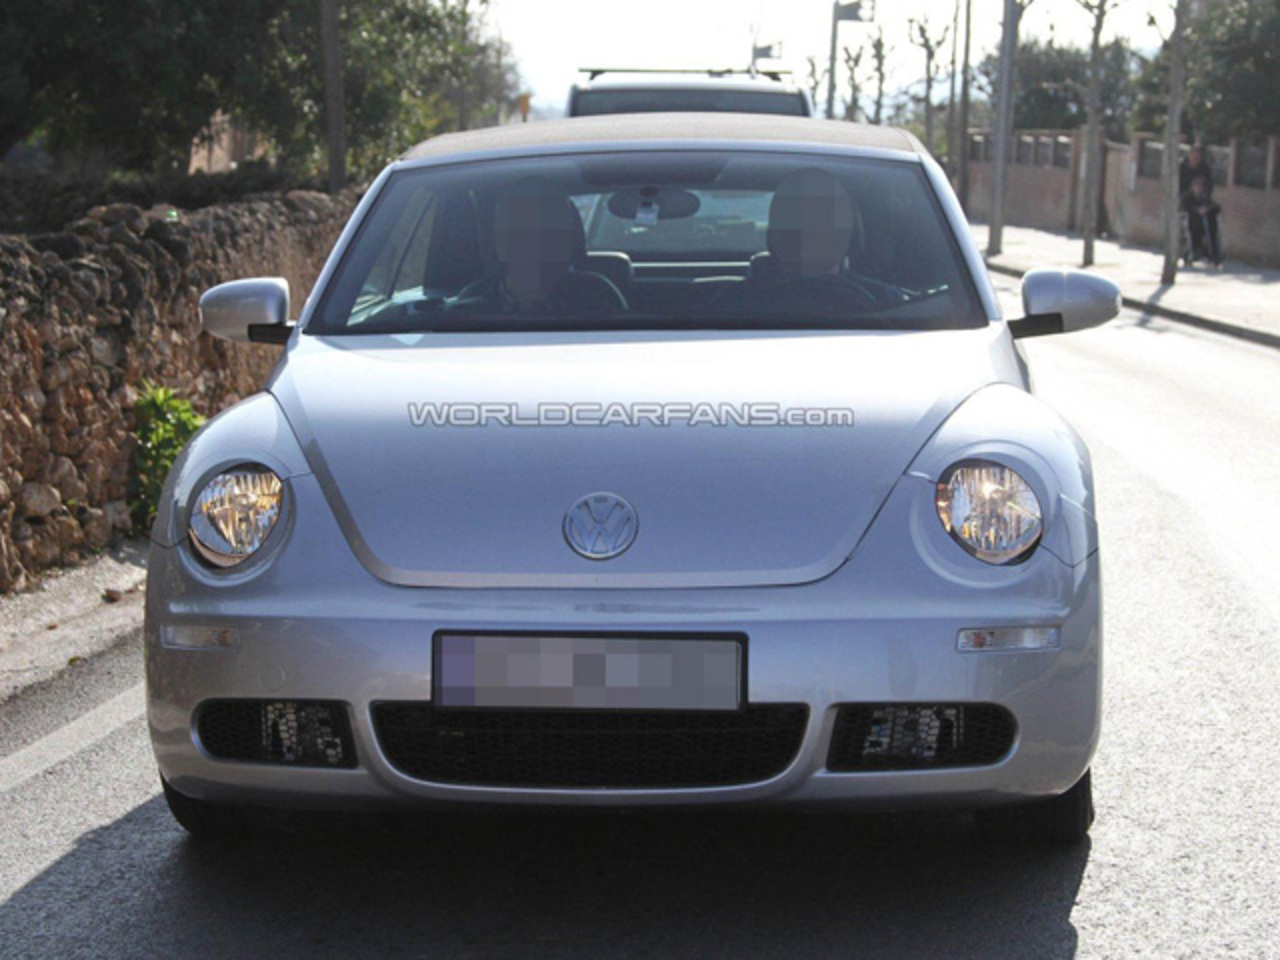 Volkswagen Beetle 25 Sport Cabriolet. View Download Wallpaper. 640x480